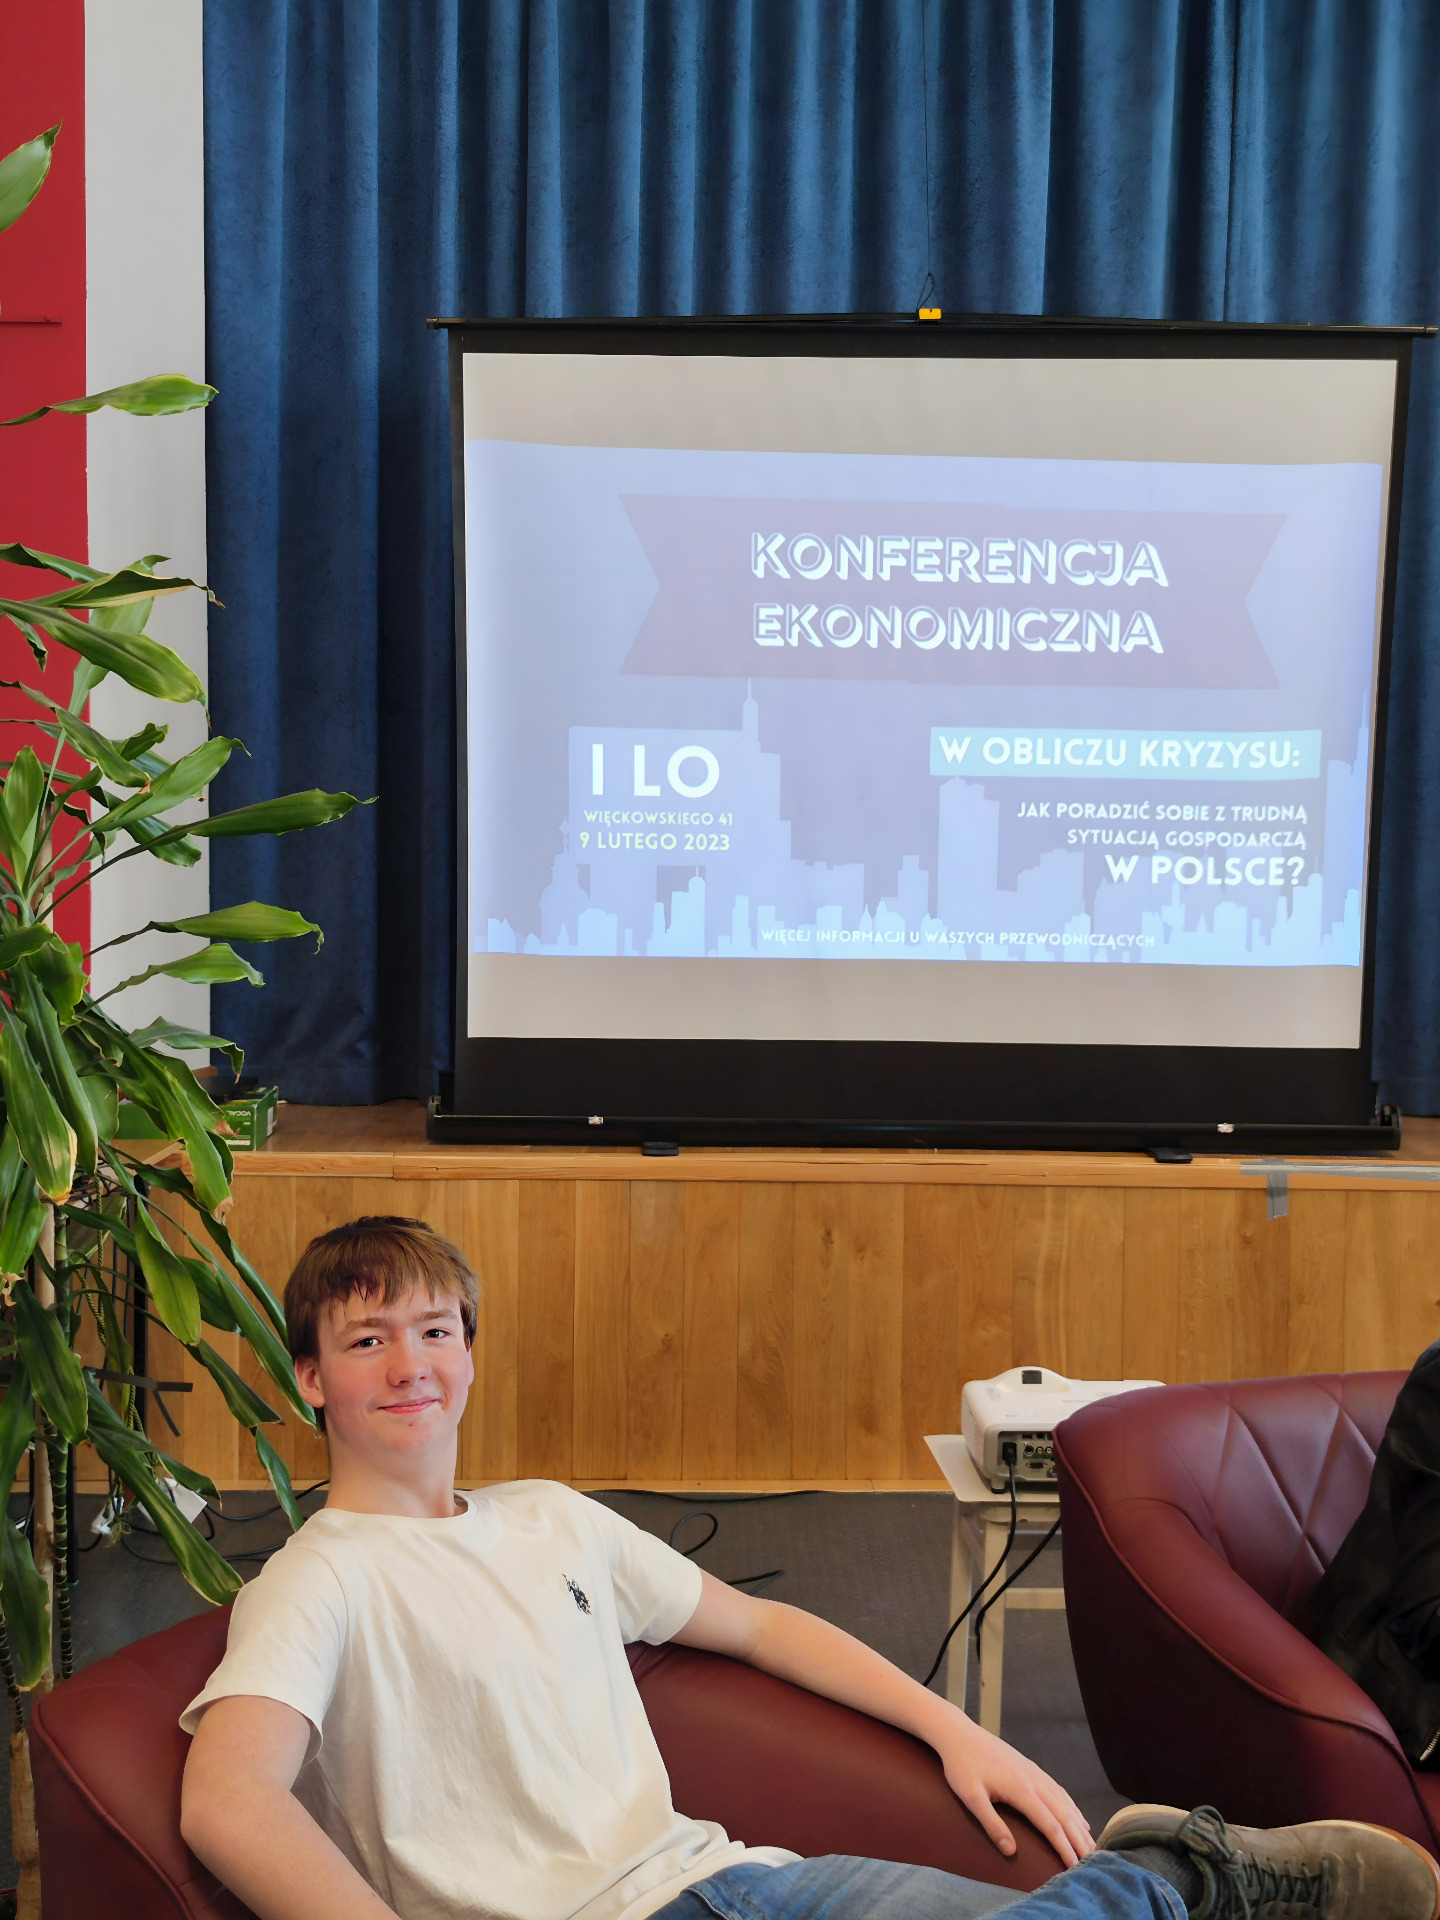 uczeń Bytnarówki siedzący przed ekranem z napisem konferencja ekonomiczna W obliczu kryzysu - Jak poradzić sobie z trudną sytuacją gospodarczą w Polsce